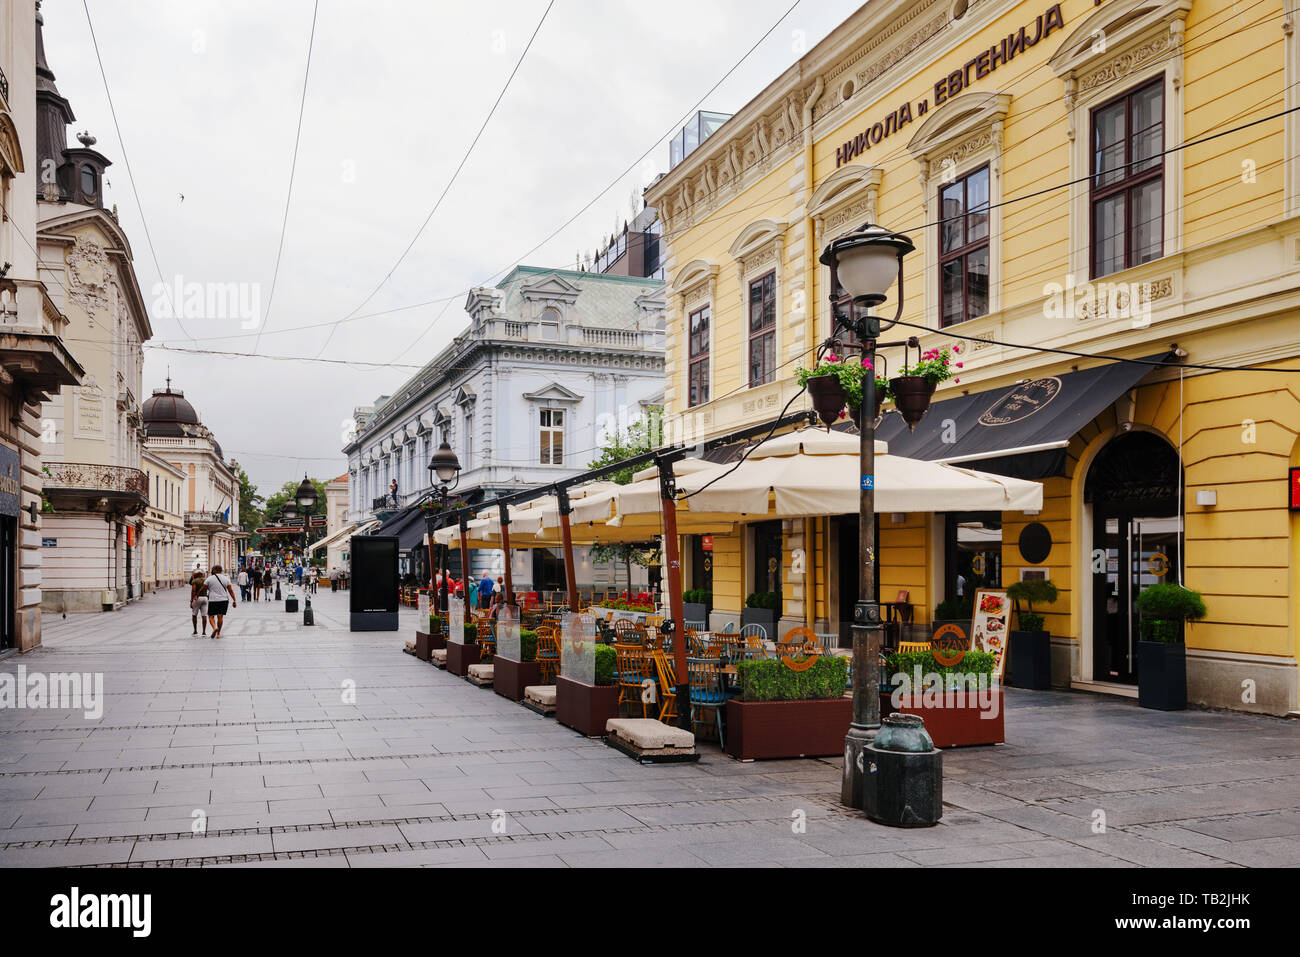 Belgrad, Serbien - 16. Juni 2018. Blick auf die Altstadt Central Street mit Sommer Cafe Terrasse, Gebäudefassaden und Strassenlaternen. Stadt Szene in der Innenstadt von wit Stockfoto